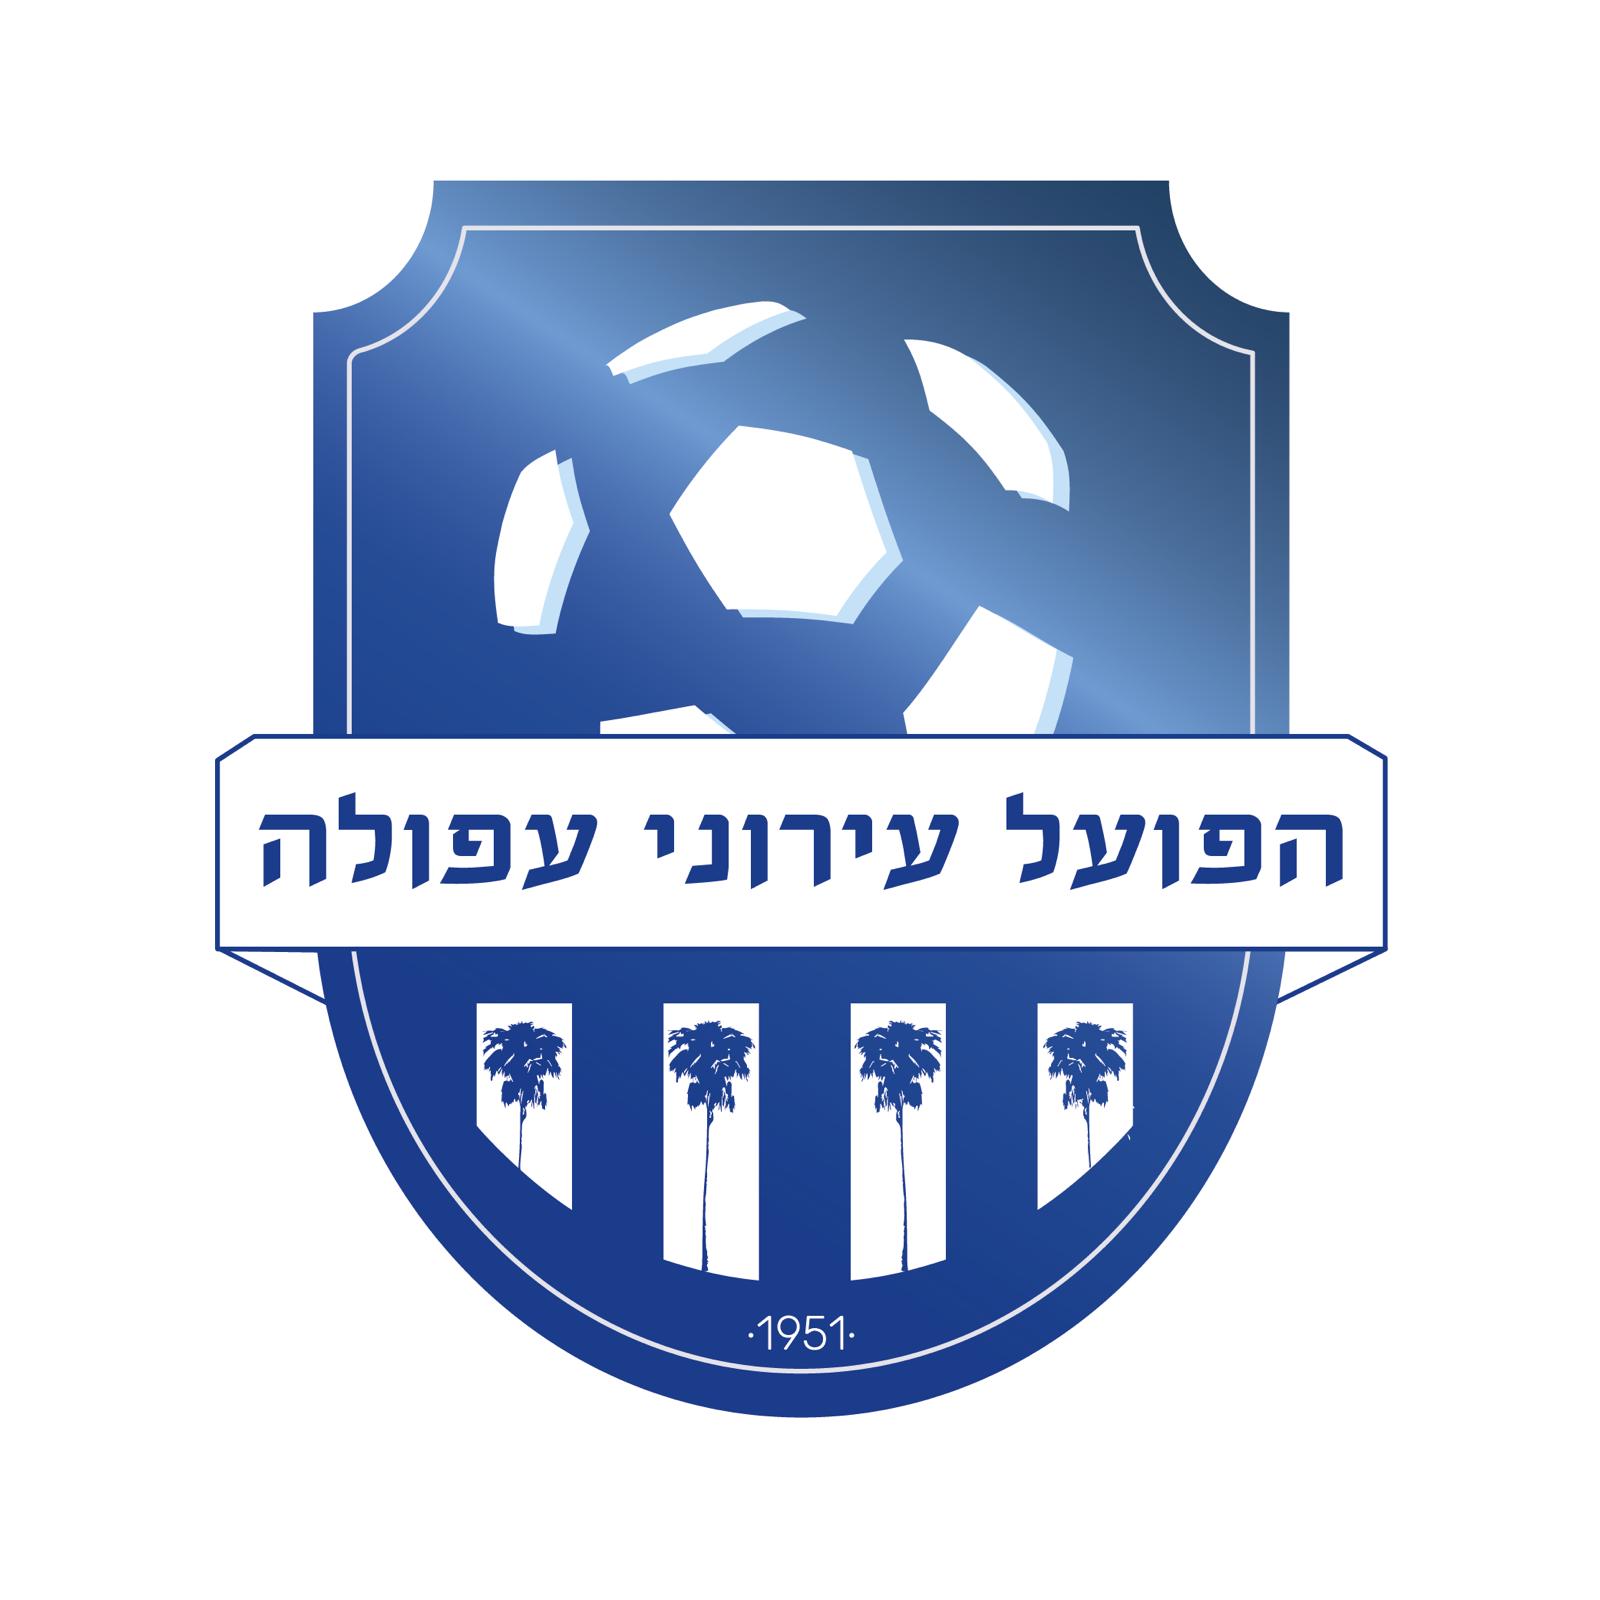 הלוגו החדש של מועדון כדורגל הפועל עירוני עפולה